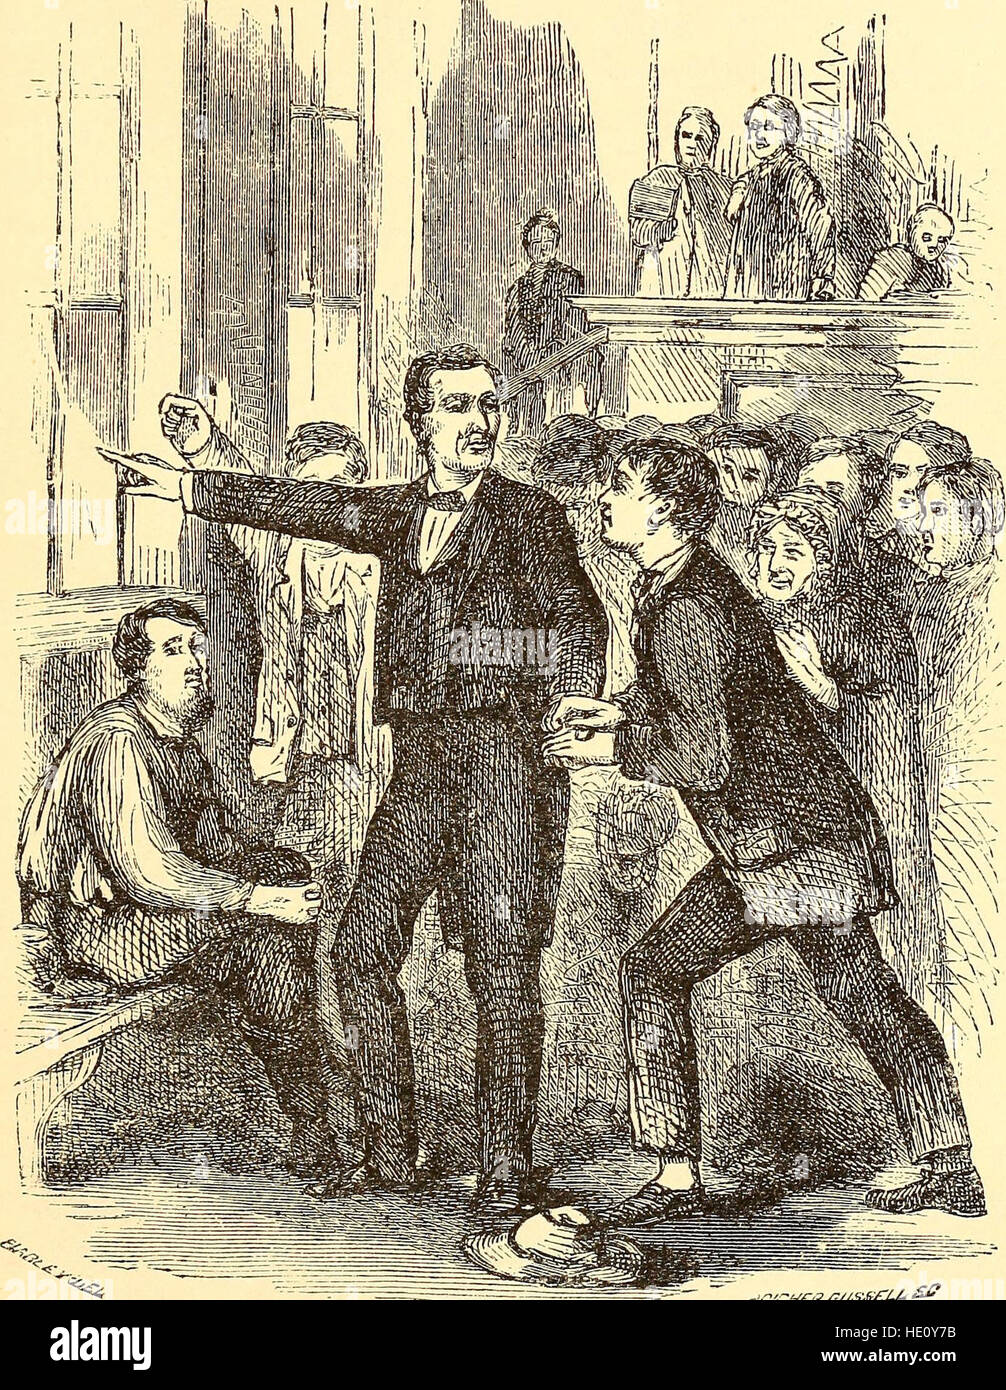 Pionnier de l'accueil à la Maison Blanche - la vie d'Abraham Lincoln- l'enfance, de la jeunesse, de la virilité, l'assassinat, la mort (1888) Banque D'Images